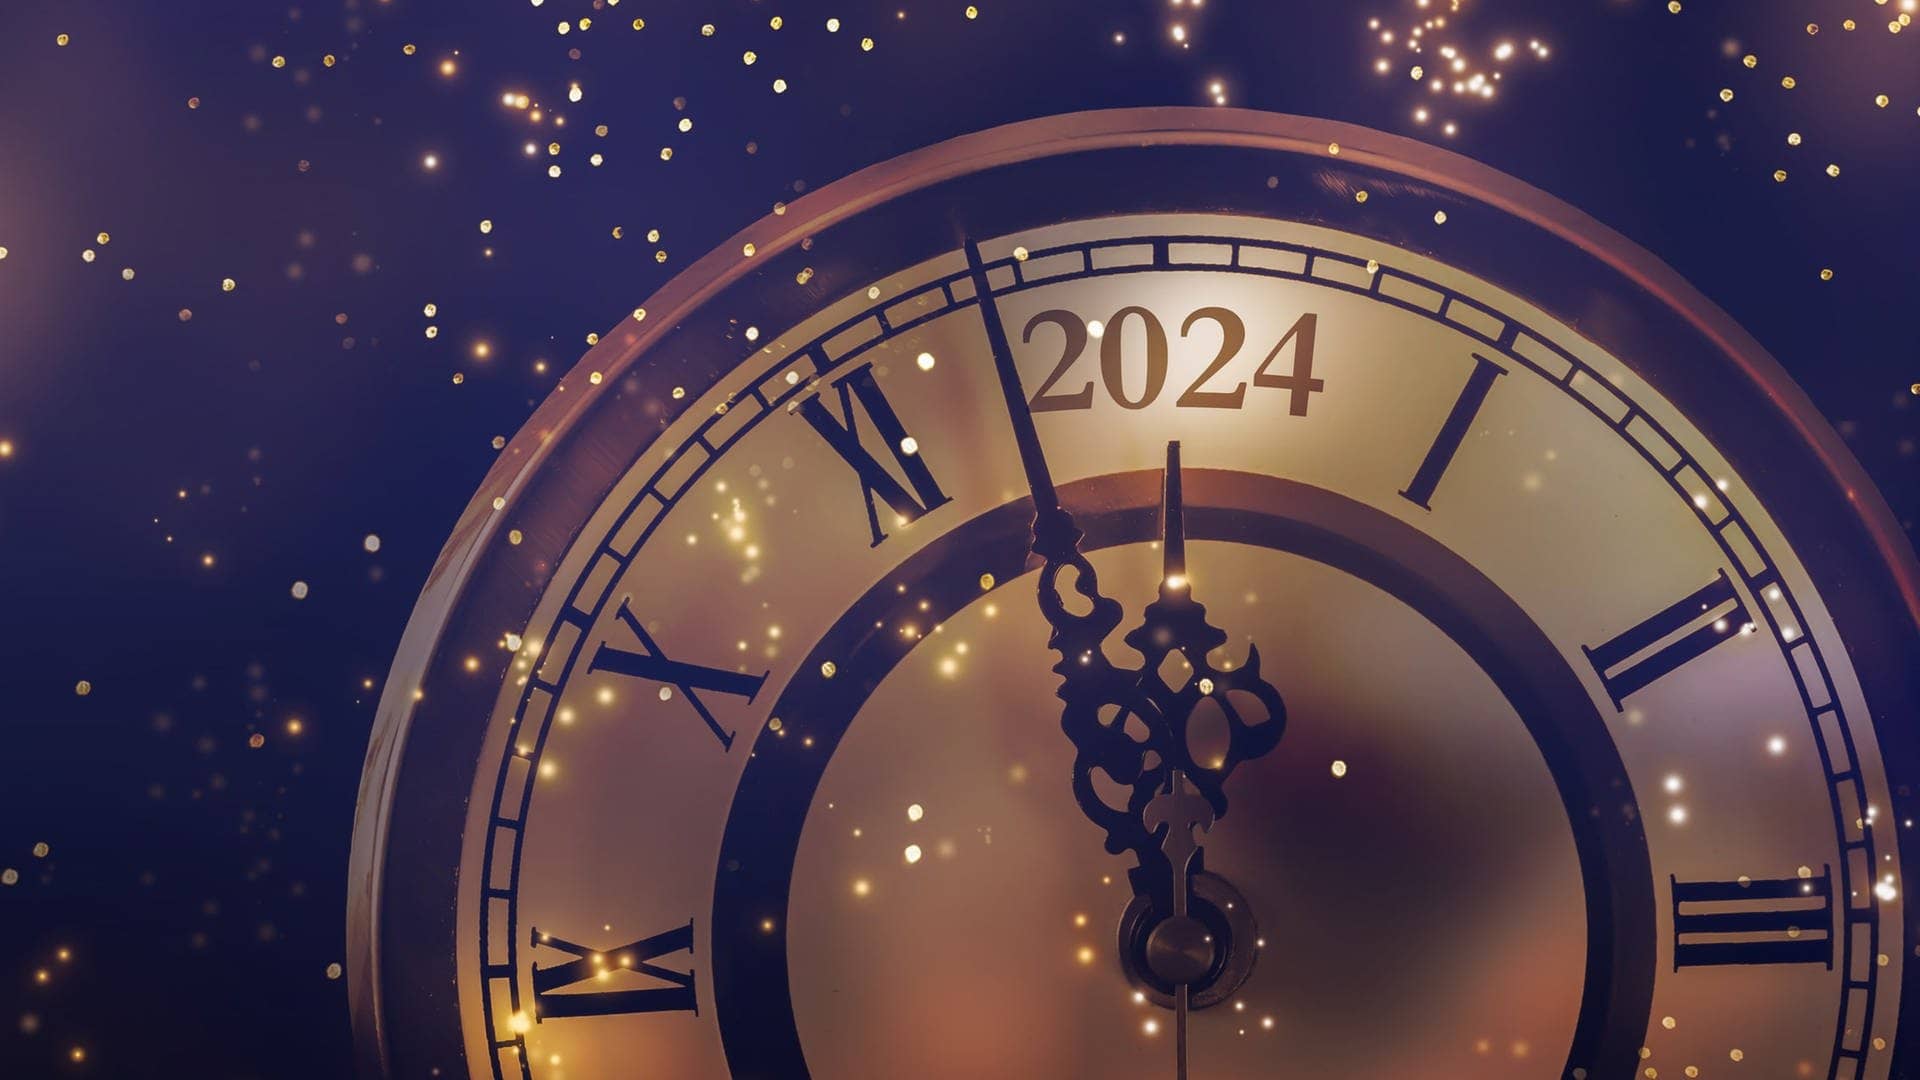 Eine Uhr zeigt zu Silvester kurz vor Mitternacht vor dem Jahr 2024 – mit den perfekten Songs startet es sich noch besser ins neue Jahr!